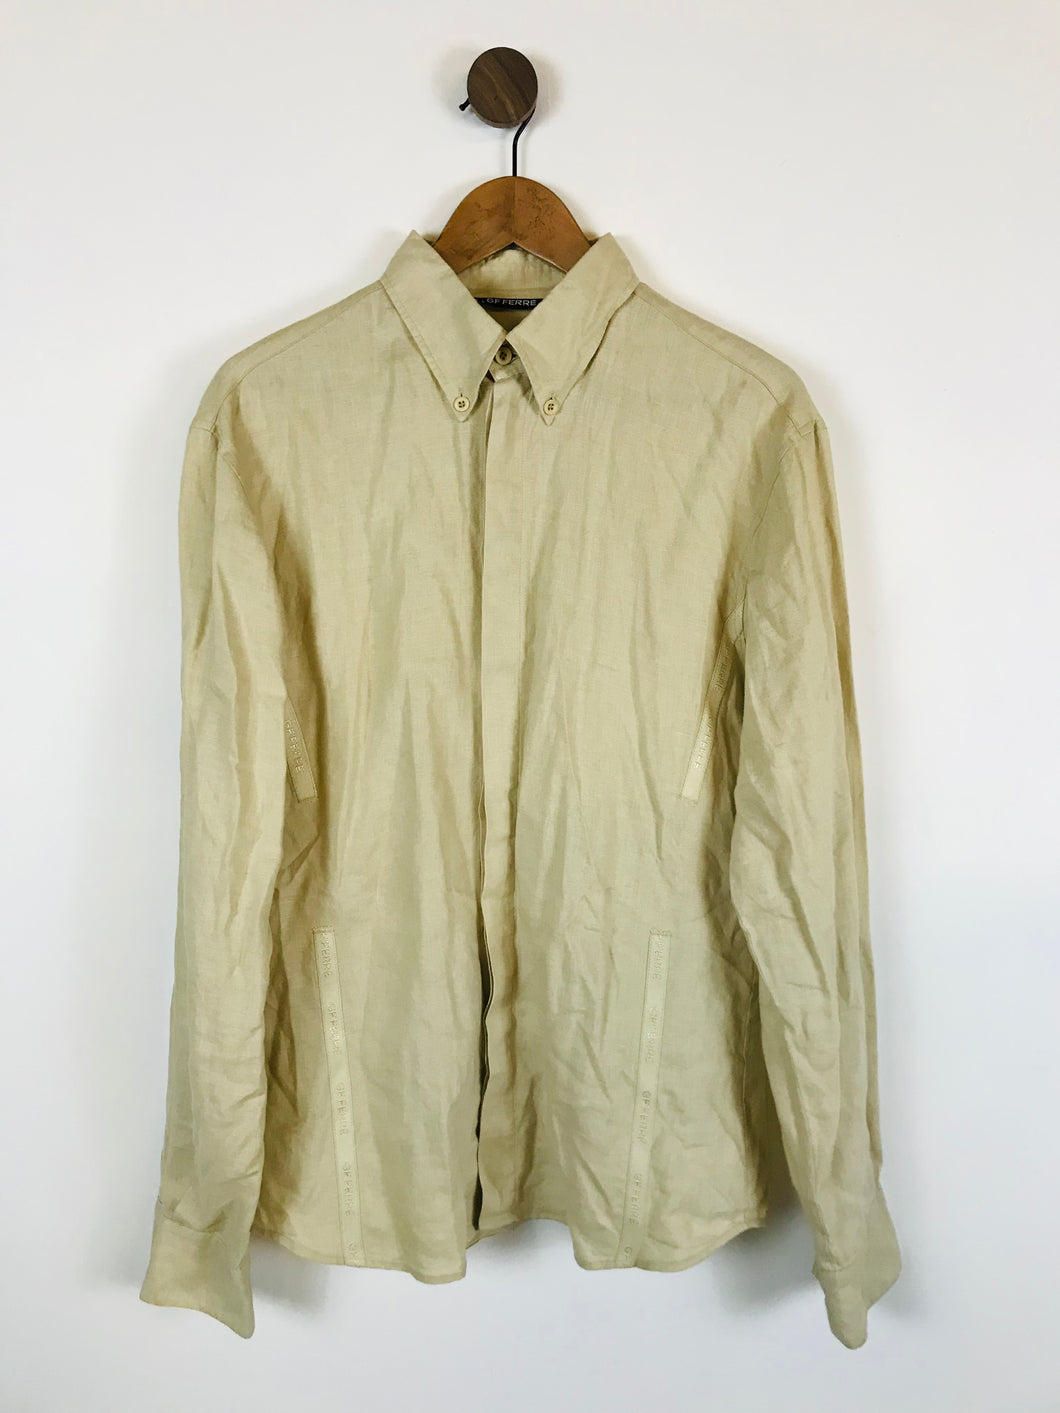 GF Ferre Men's Long Sleeve Button-Up Shirt | L/XL | Beige